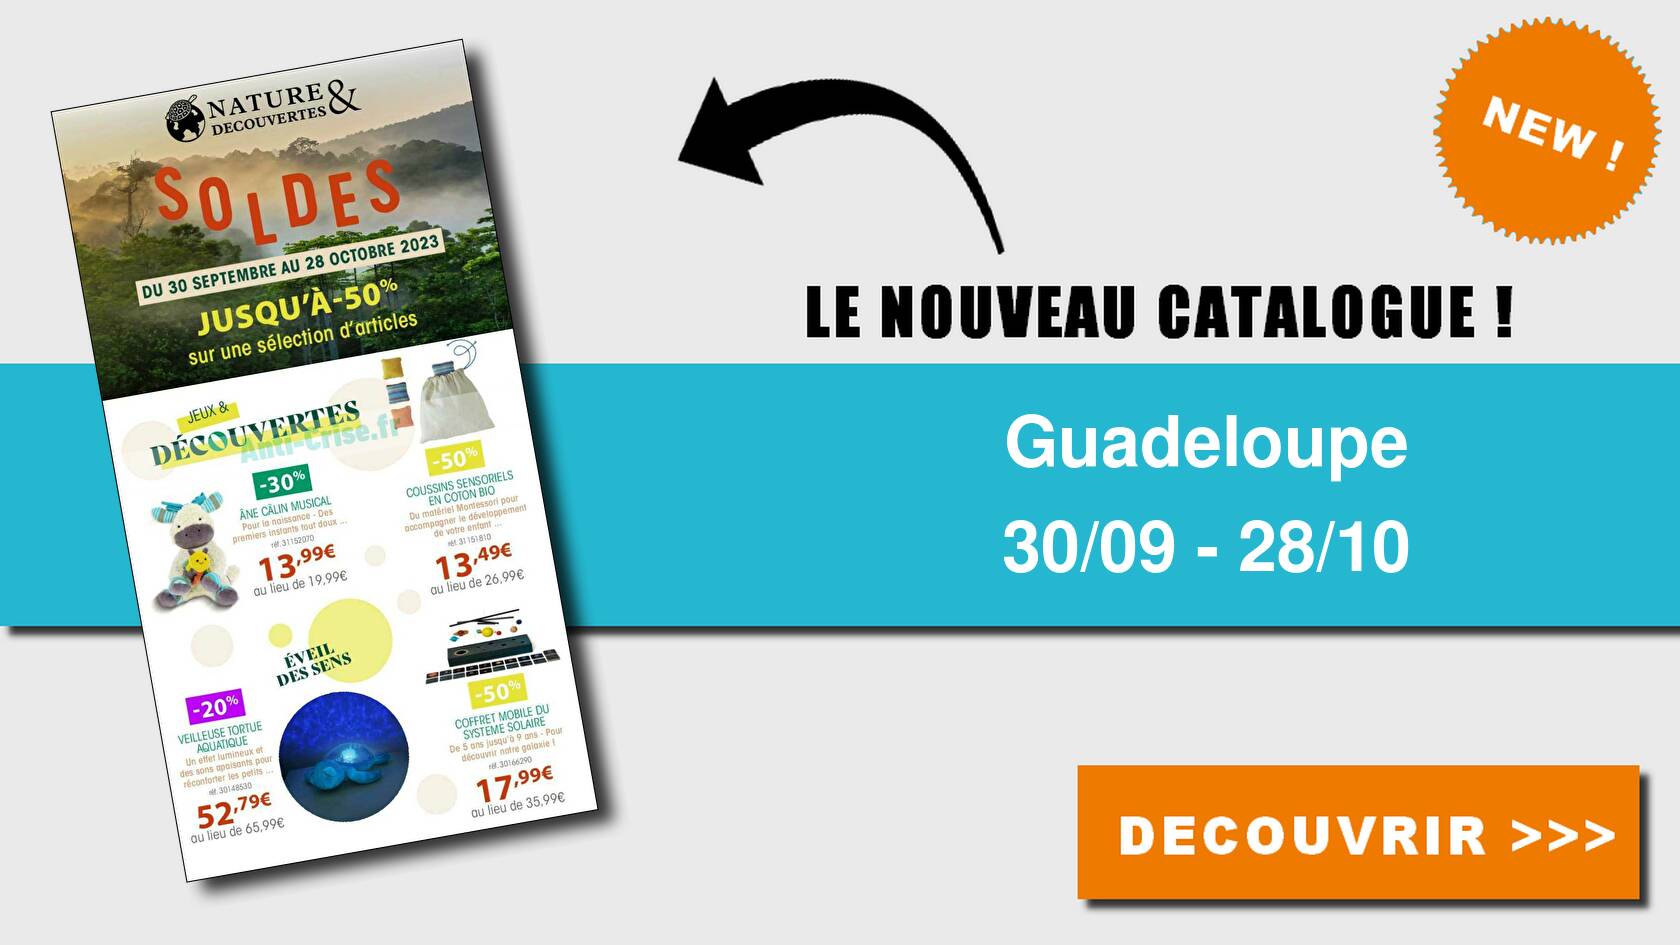 Catalogue Guadeloupe du 30 septembre au 28 octobre 2023 ( Nature & Découvertes Guadeloupe)GUADELOUPE : le nouveau catalogue du 30  septembre au 28 octobre 2023 est disponible! Découvrez les bons plans du  dernier catalogue.